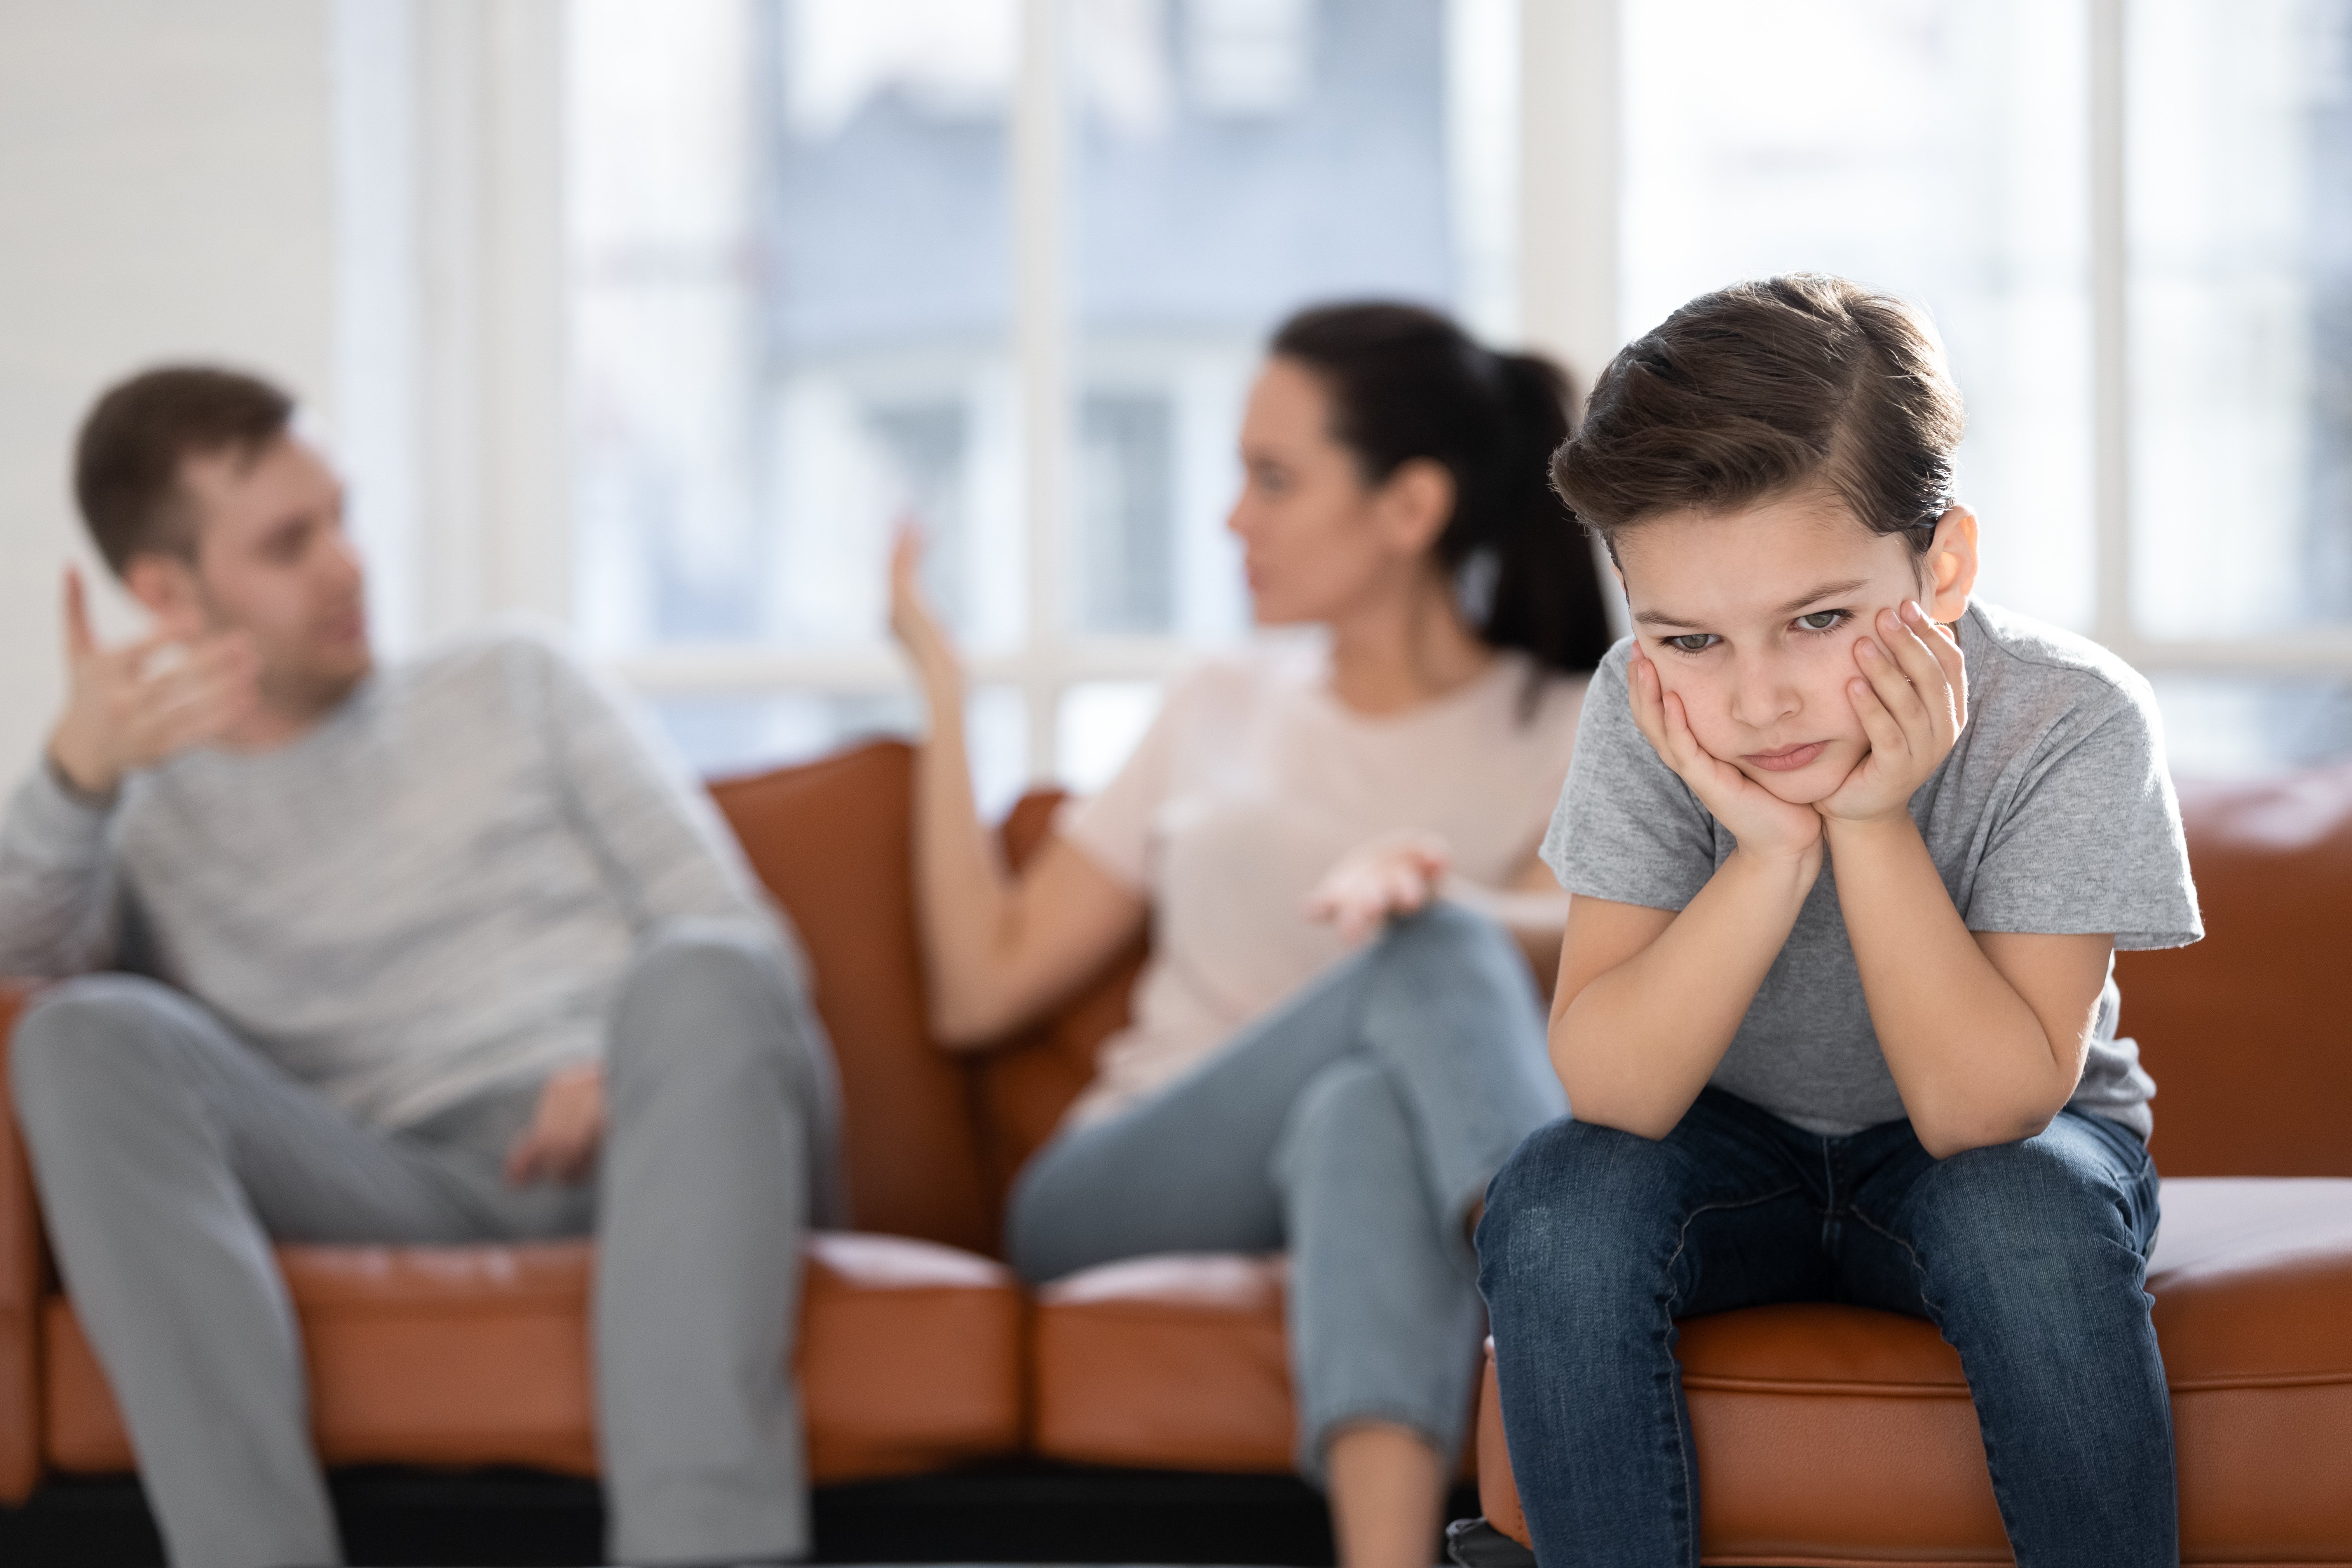 Kleiner Junge sitzt, während Eltern sich streiten | Quelle: Shutterstock